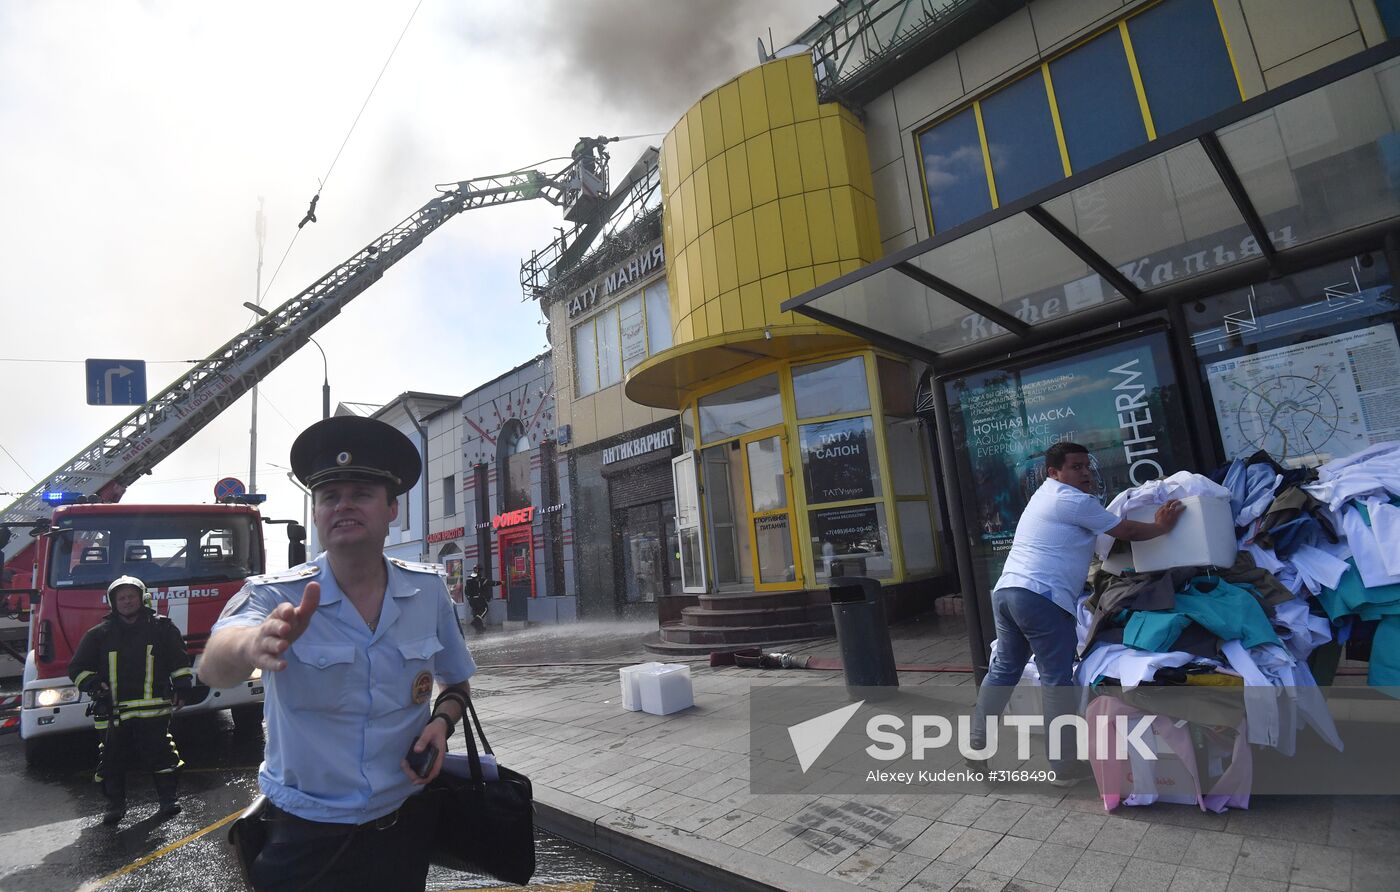 Fire at Atom shopping mall on Taganskaya Square